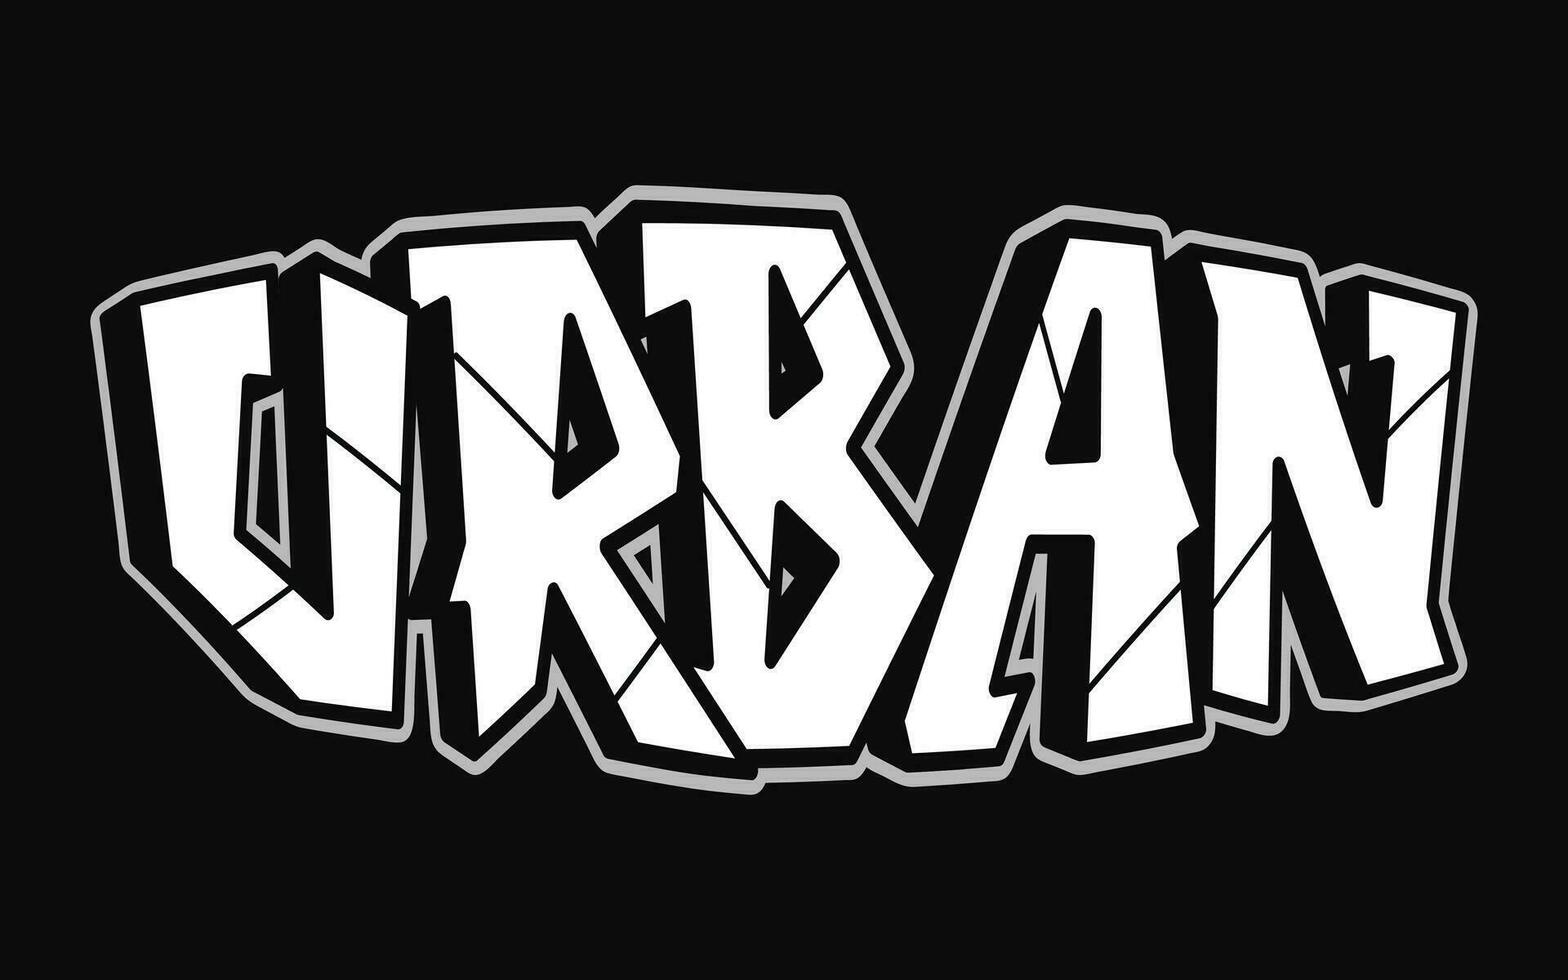 urbano - singolo parola, lettere graffiti stile. vettore mano disegnato logo. divertente freddo trippy parola urbano, moda, graffiti stile Stampa maglietta, manifesto concetto